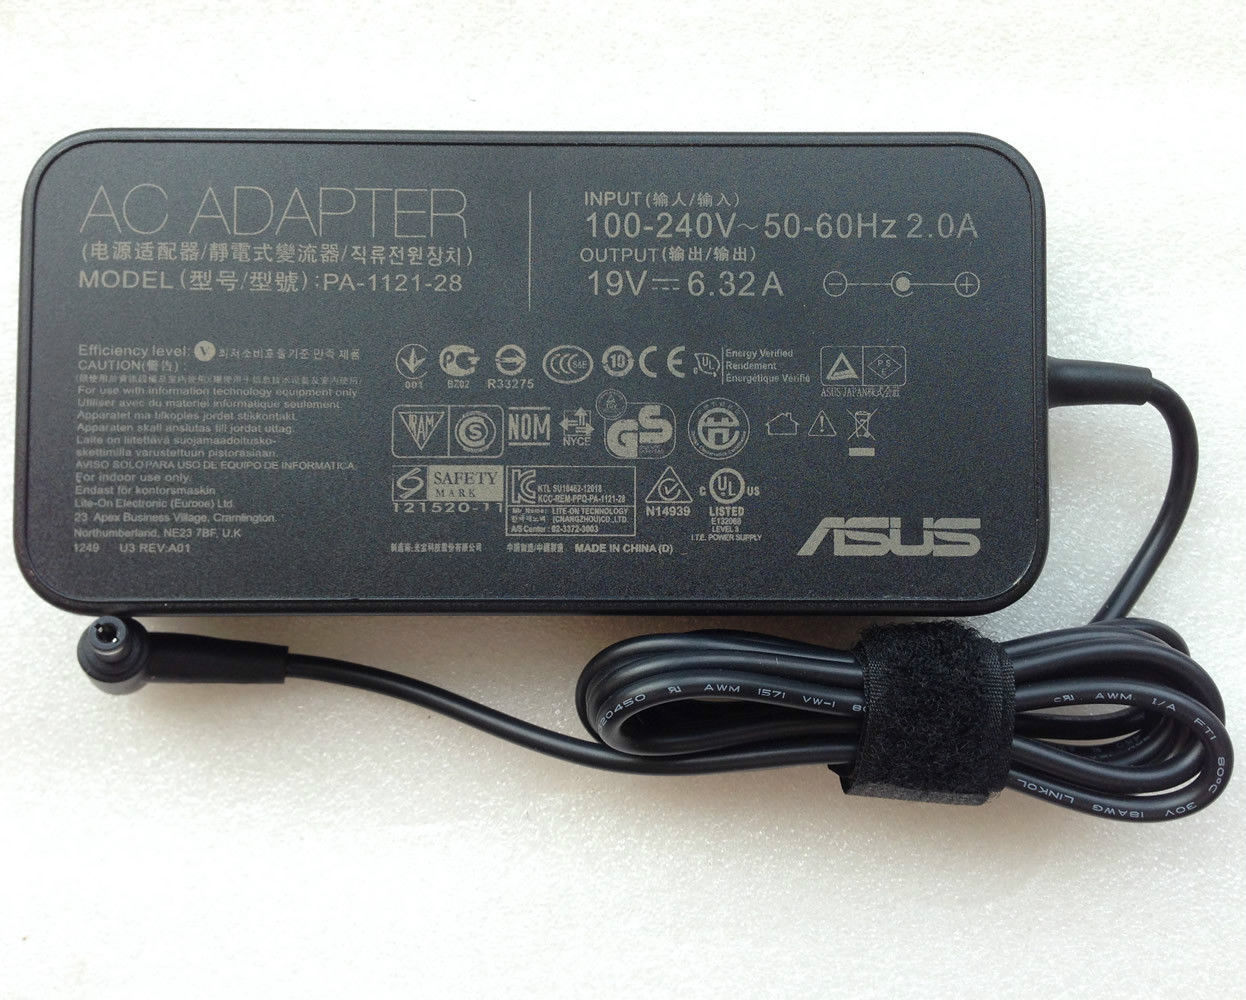 19V 6.32A AC Adapter ASUS G51J A7T N550 Q550 N750 PA-1121-28 - Click Image to Close